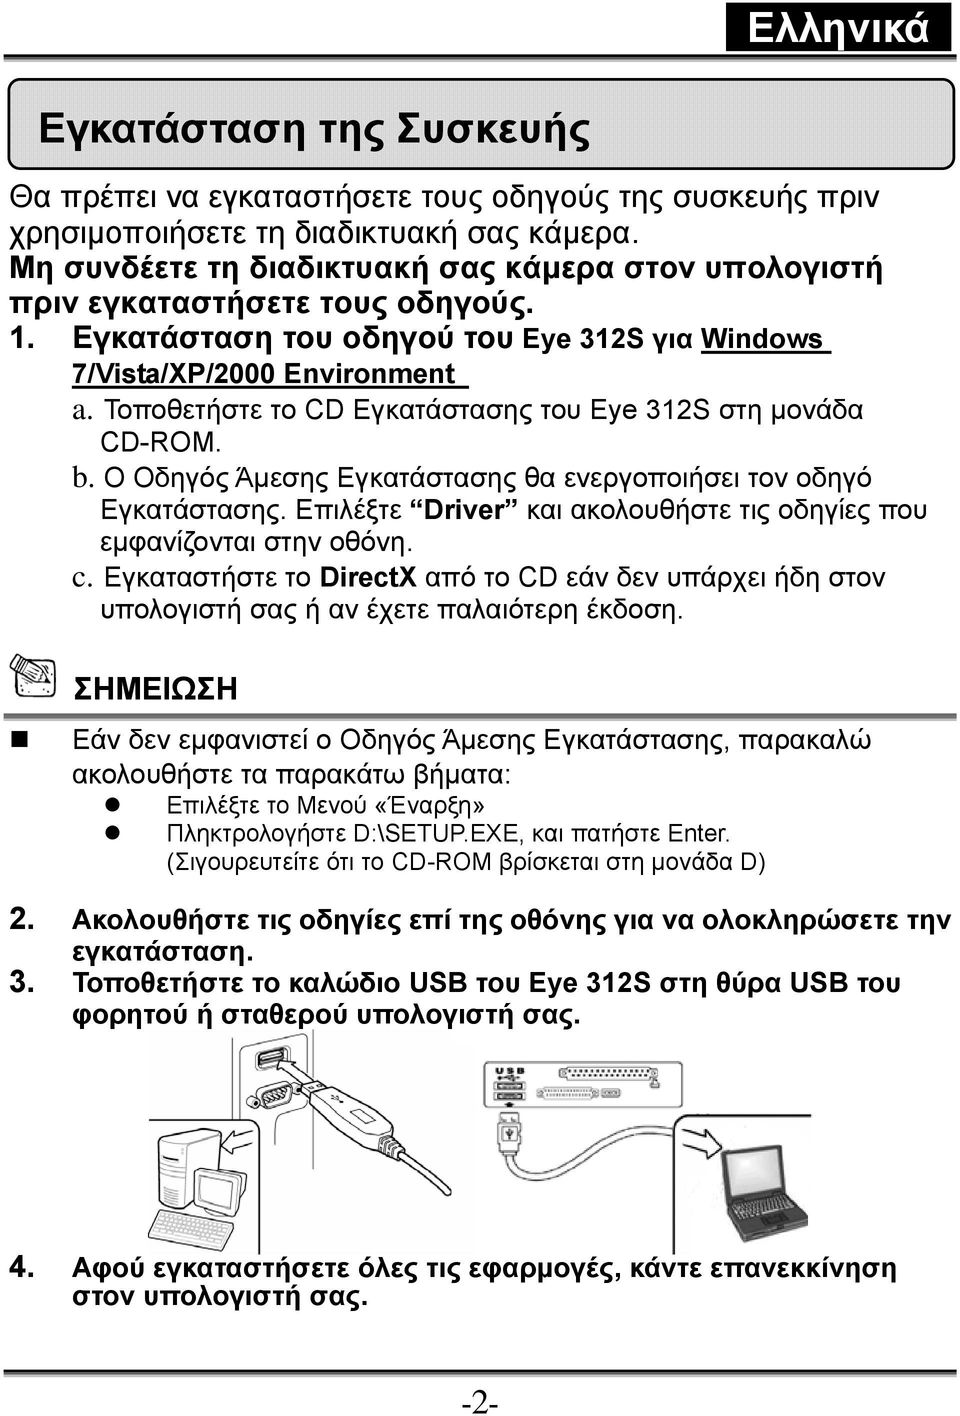 Τοποθετήστε το CD Εγκατάστασης του Eye 312S στη μονάδα CD-ROM. b. Ο Οδηγός Άμεσης Εγκατάστασης θα ενεργοποιήσει τον οδηγό Εγκατάστασης.